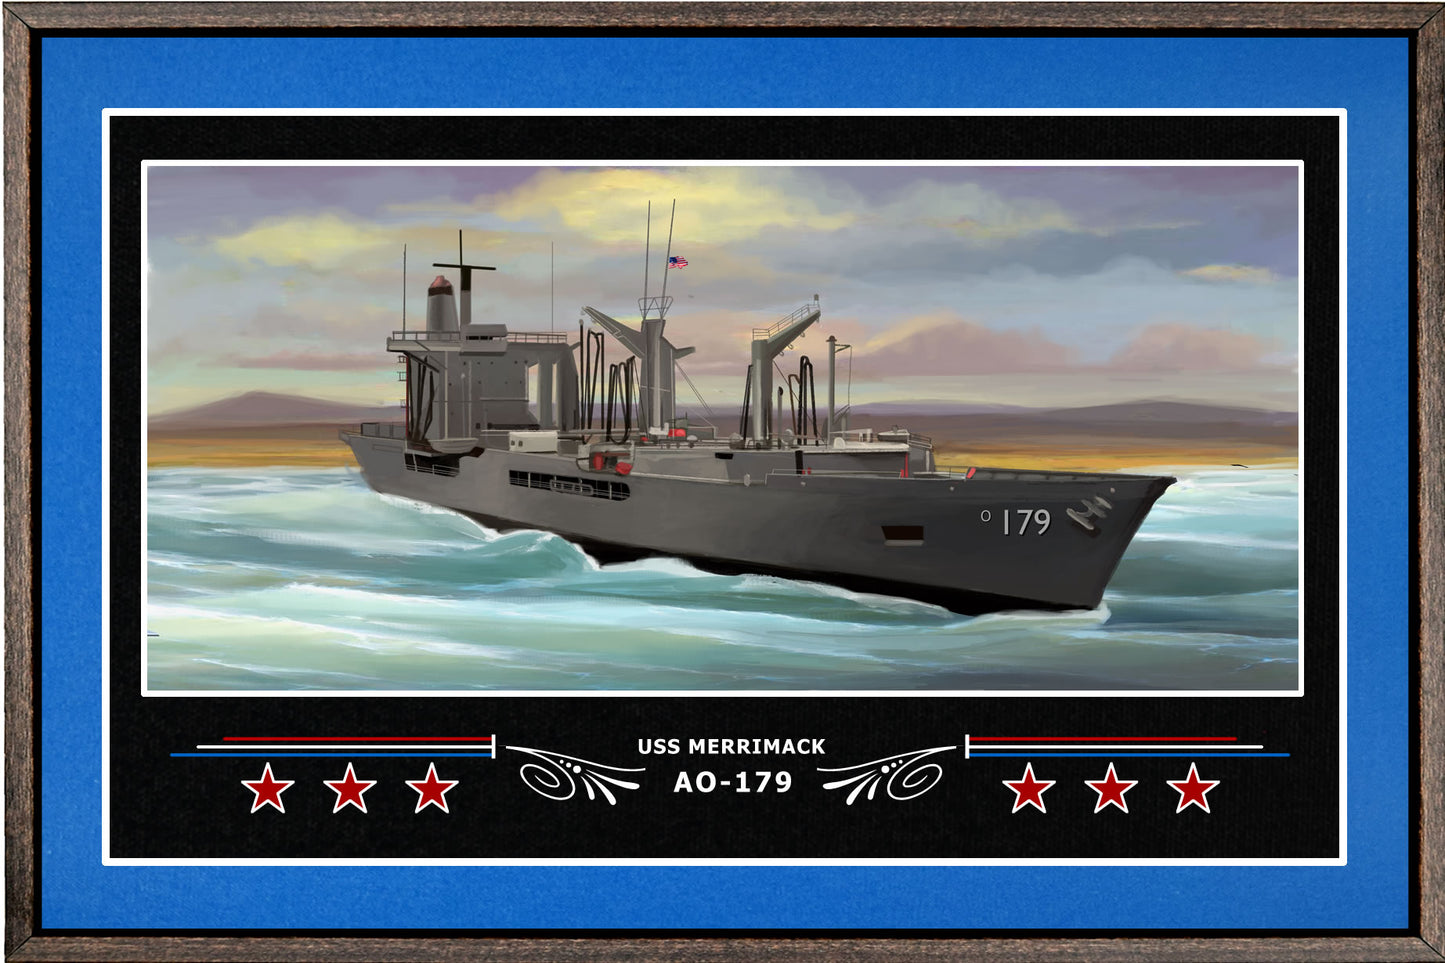 USS MERRIMACK AO 179 BOX FRAMED CANVAS ART BLUE